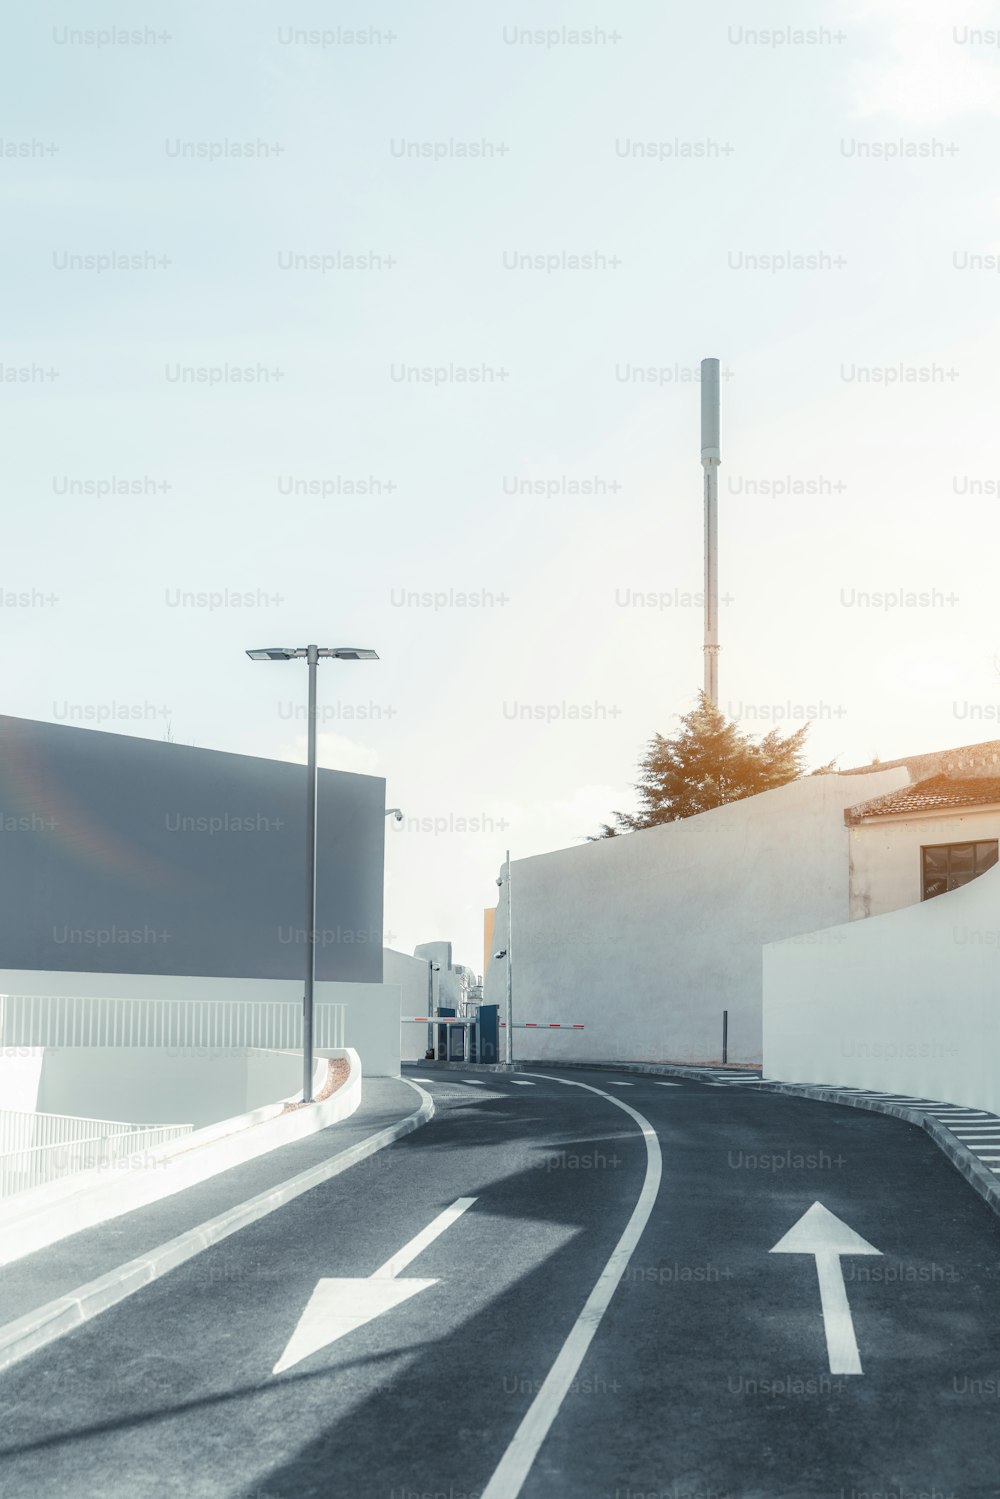 Una vista vertical de una estrecha carretera asfaltada de dos carriles que sigue a la barrera al final con flechas opuestas como marca vial y pequeñas aceras a ambos lados, la antena celular detrás, día soleado